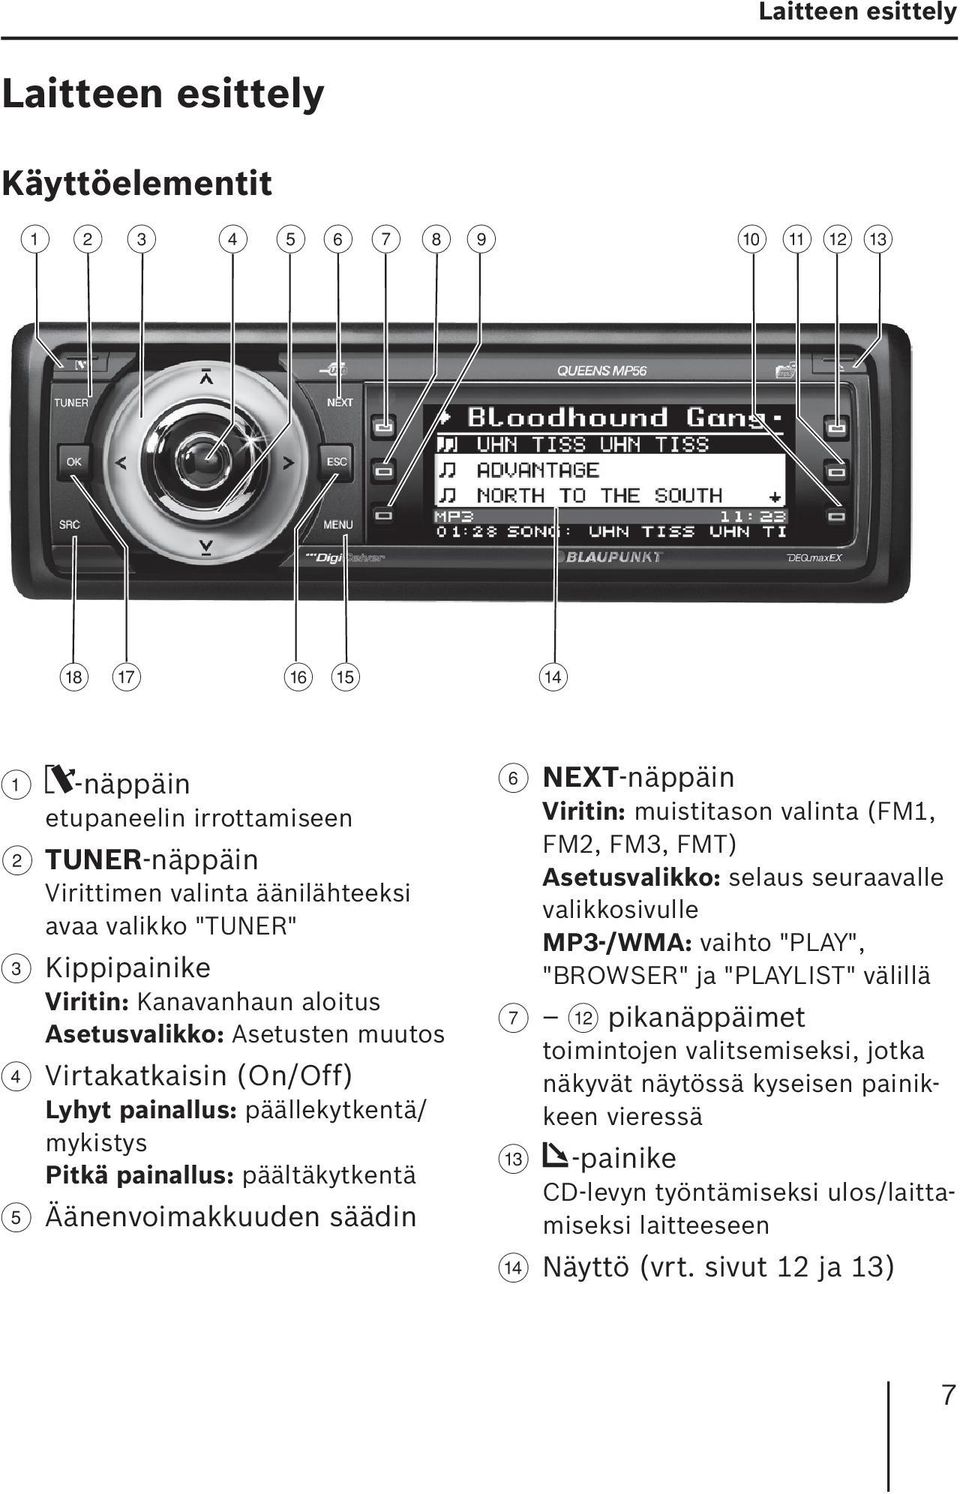 Virtakatkaisin (On/Off) Lyhyt painallus: päällekytkentä/ mykistys Pitkä painallus: päältäkytkentä 5 Äänenvoimakkuuden säädin 6 NEXT-näppäin Viritin: muistitason valinta (FM1, FM2, FM3, FMT)